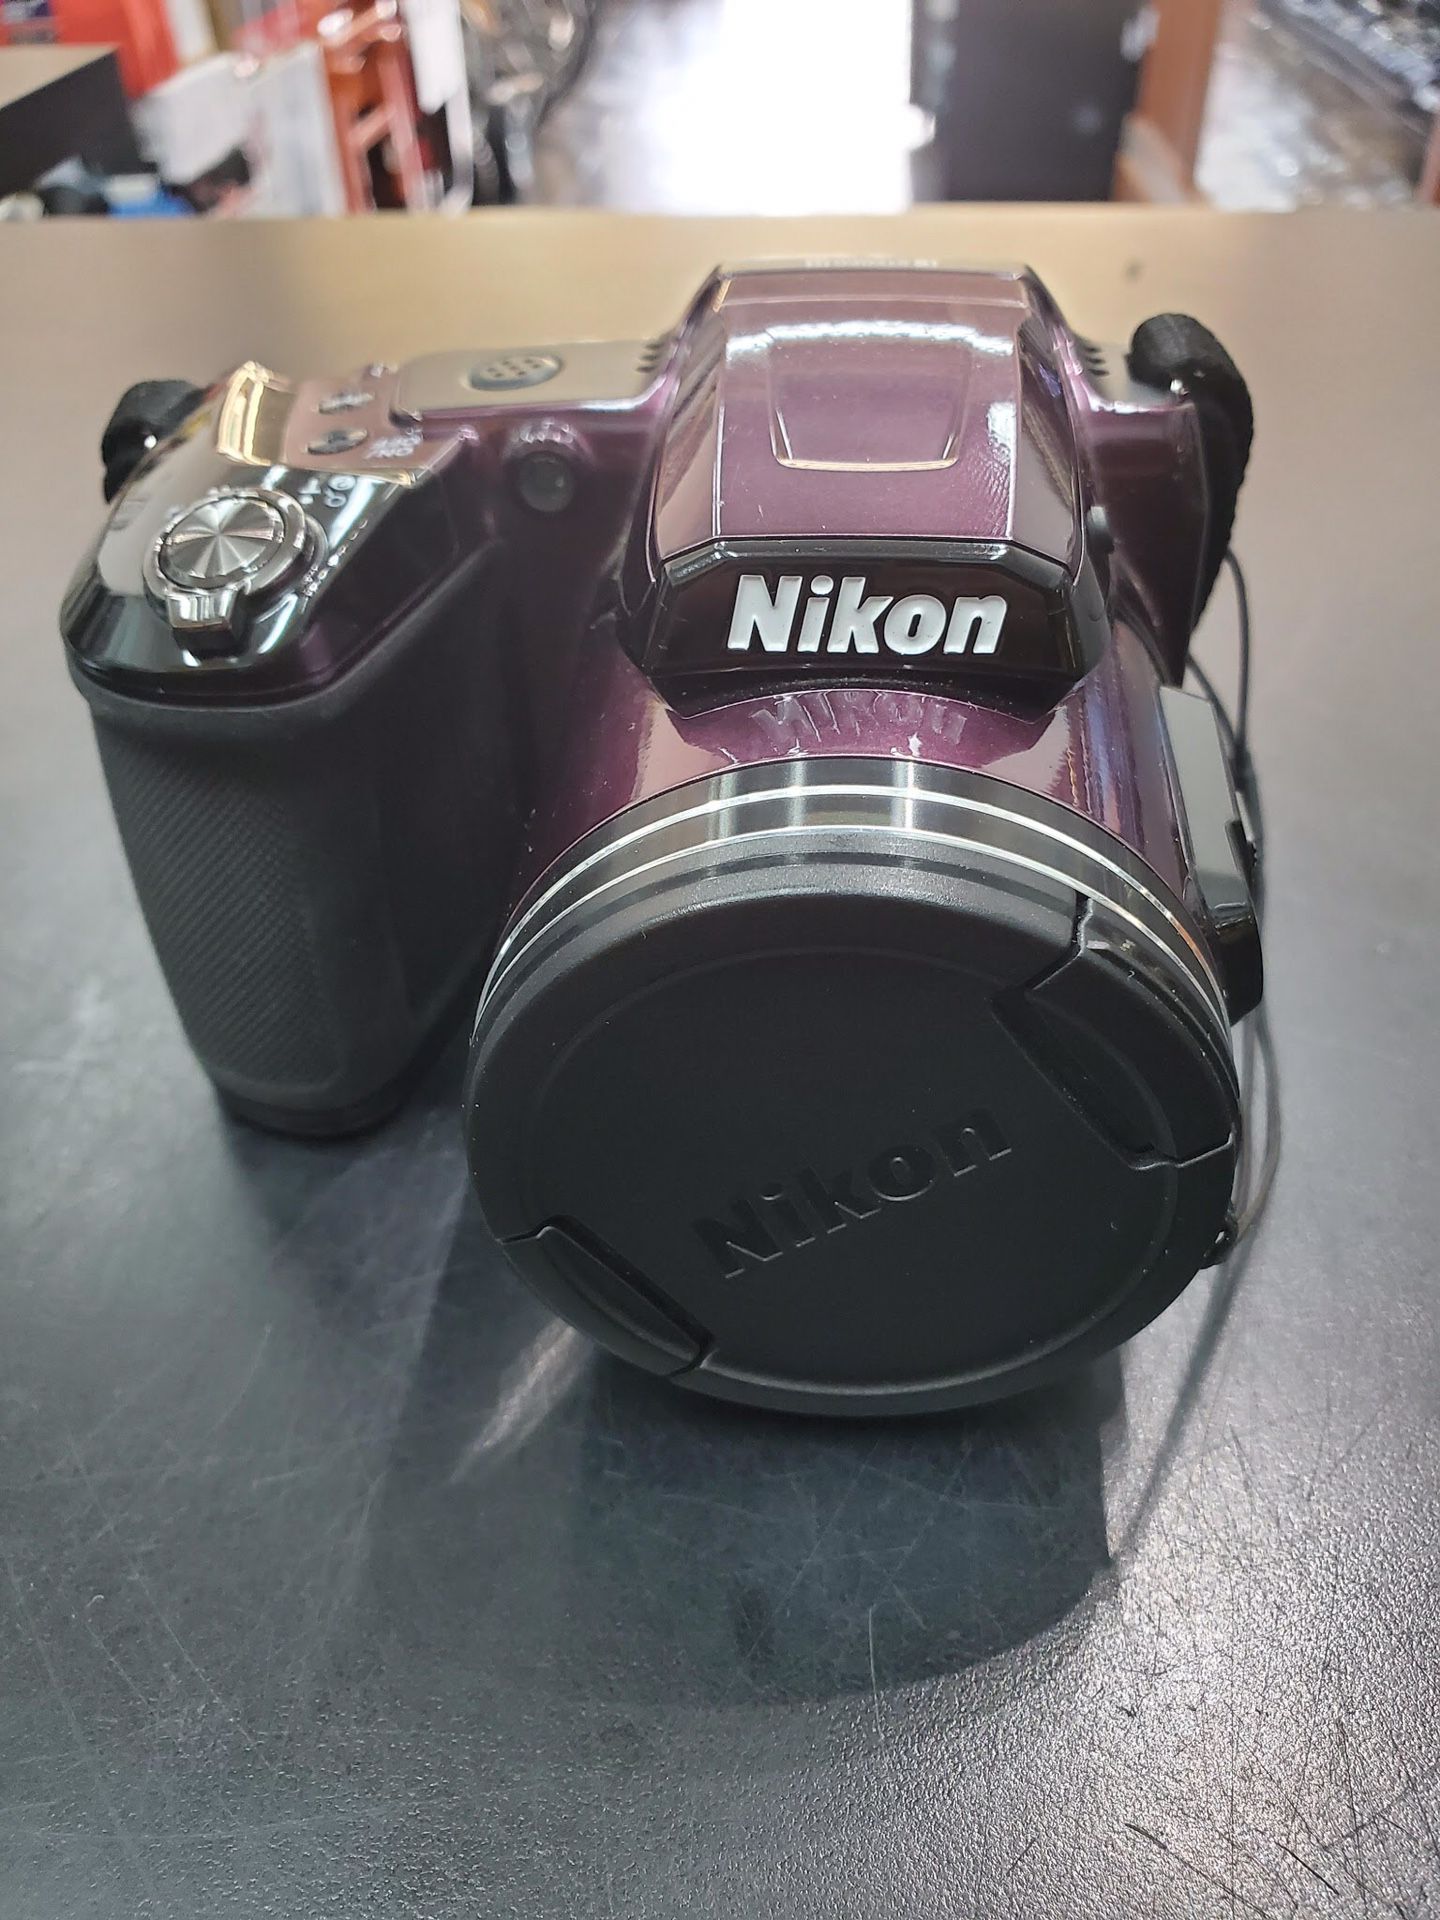 Nikon L840 CoolPix 16.0mp Digital Camera